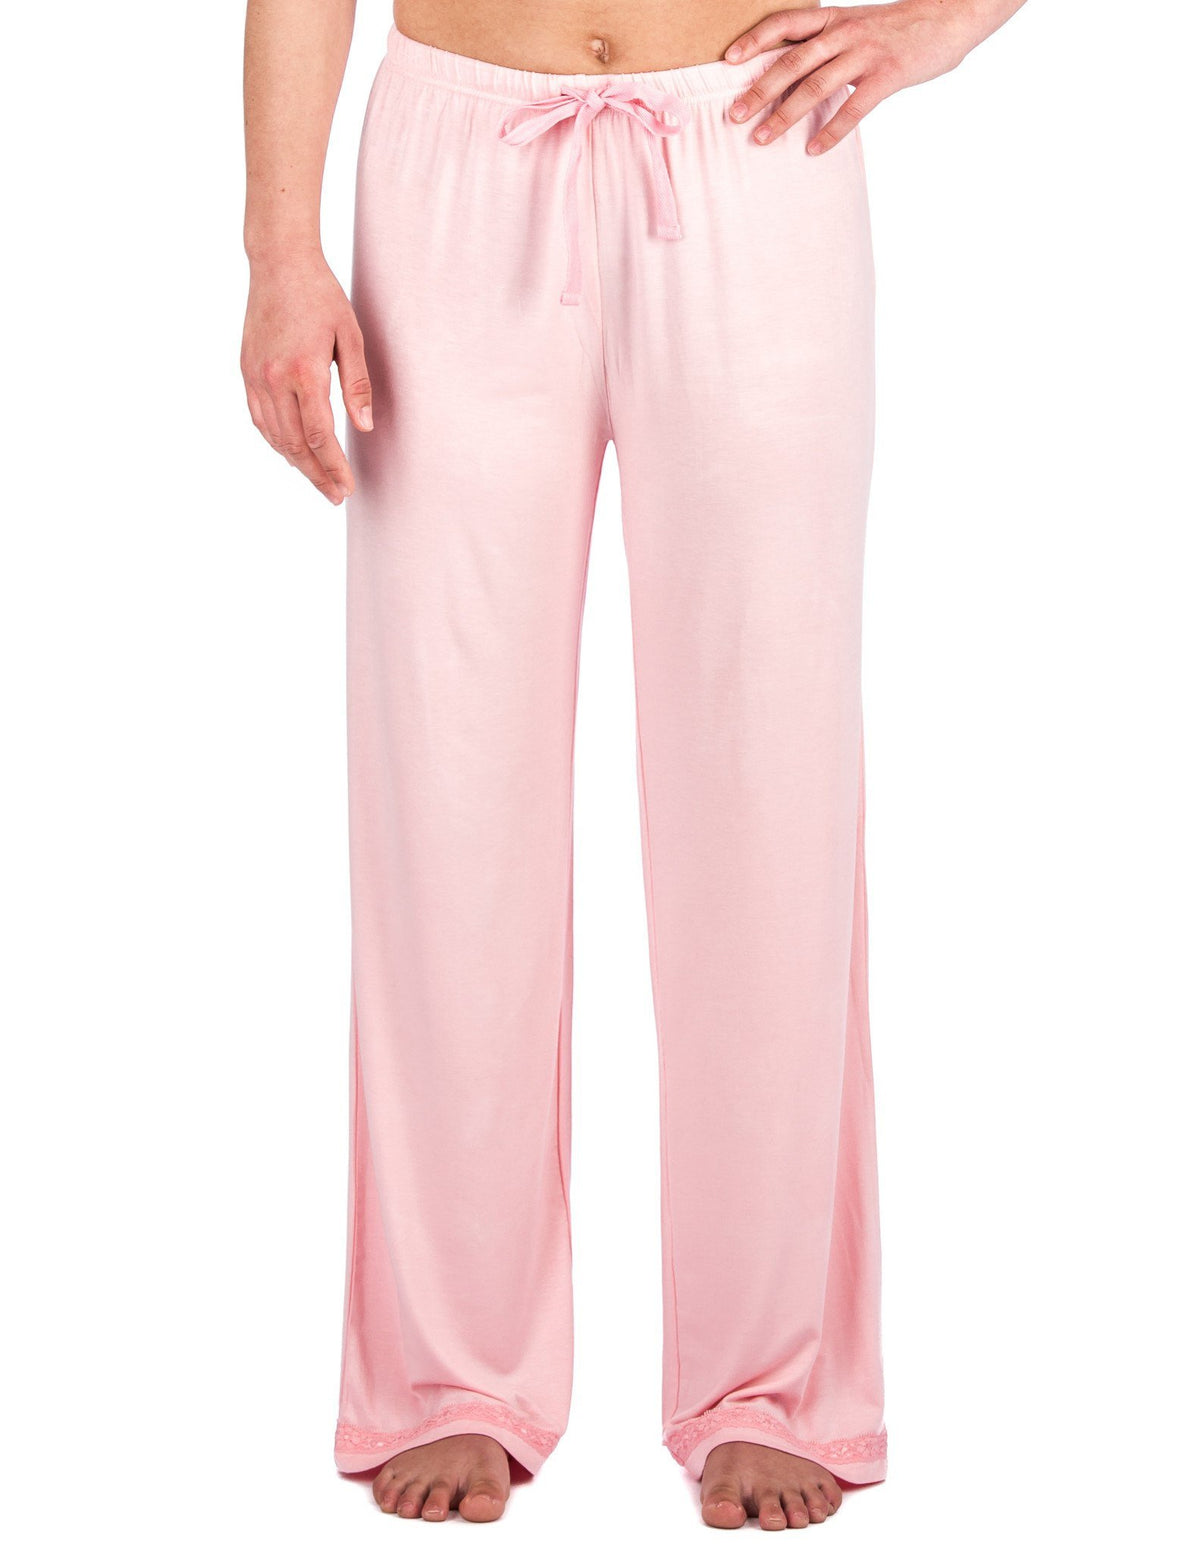 Women's Cool Knit Lounge Pants - Pink